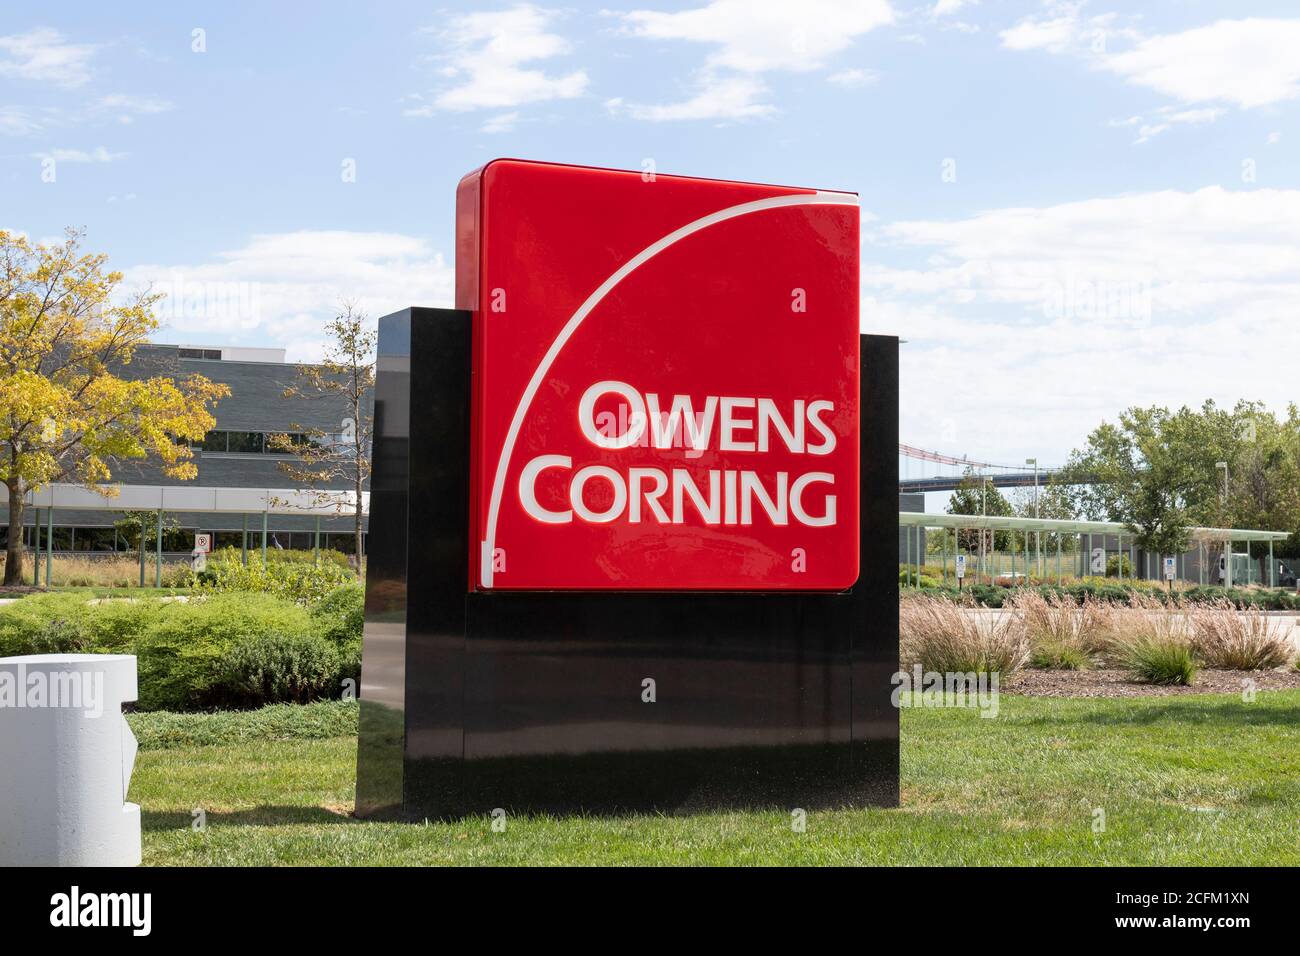 Toledo - Ca. September 2020: Owens Corning Hauptsitz. Owens Corning entwickelt und produziert Isolations-, Dach- und Glasfaserverbundwerkstoffe. Stockfoto